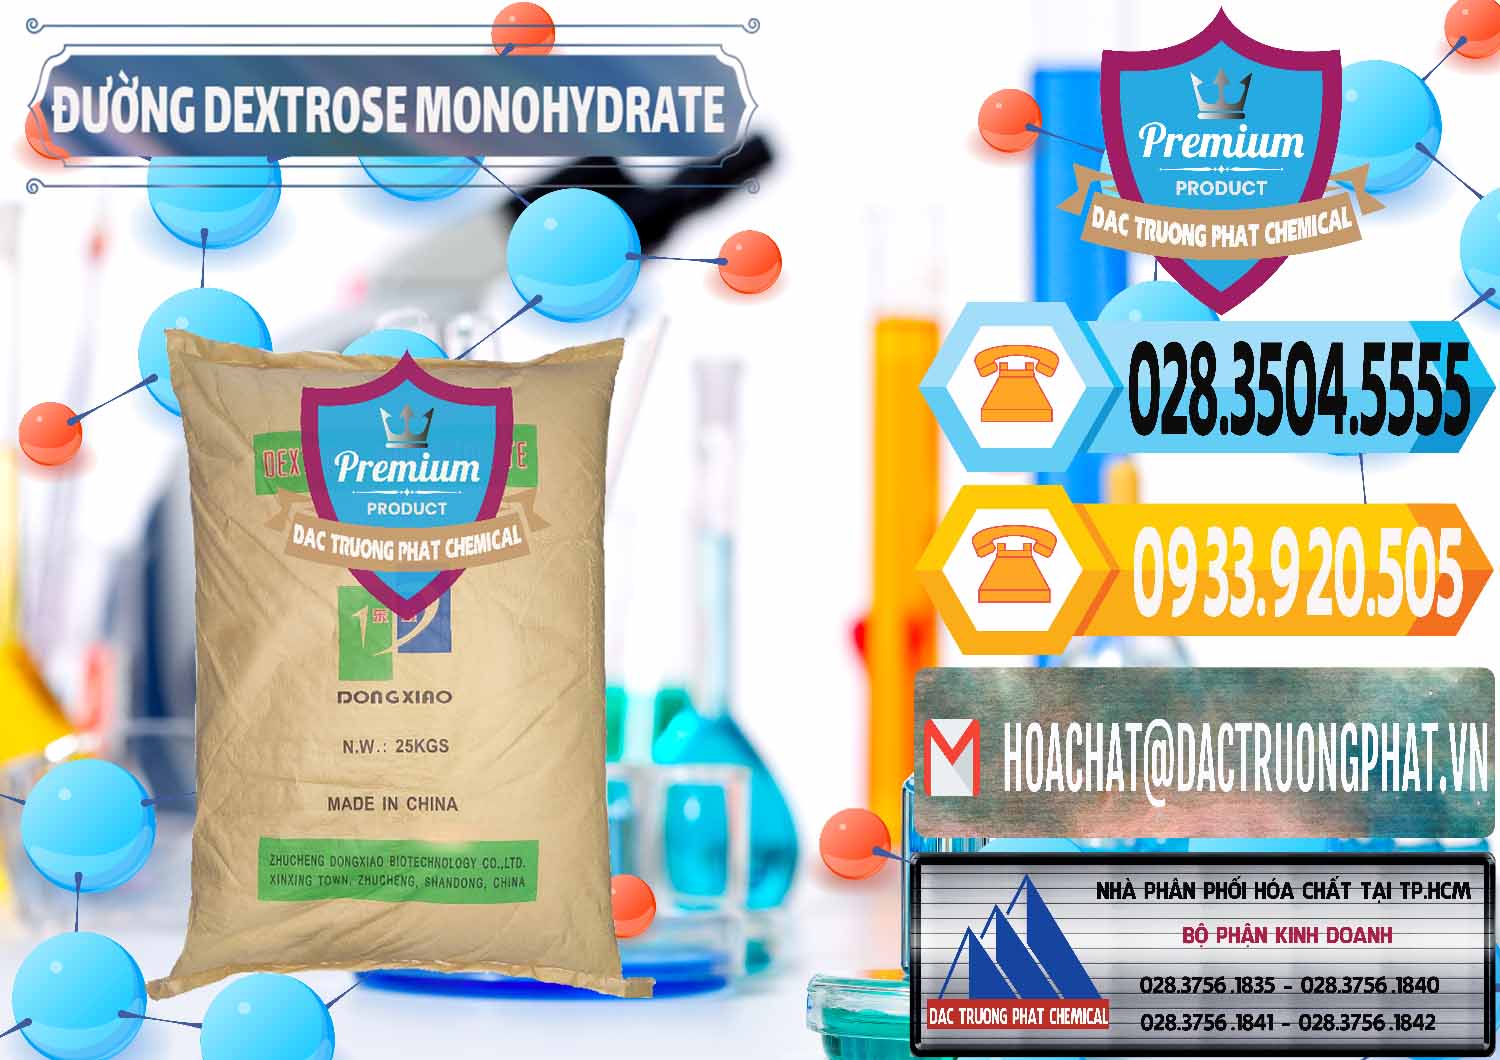 Đơn vị cung cấp và bán Đường Dextrose Monohydrate Food Grade Dongxiao Trung Quốc China - 0063 - Cung cấp & phân phối hóa chất tại TP.HCM - hoachattayrua.net